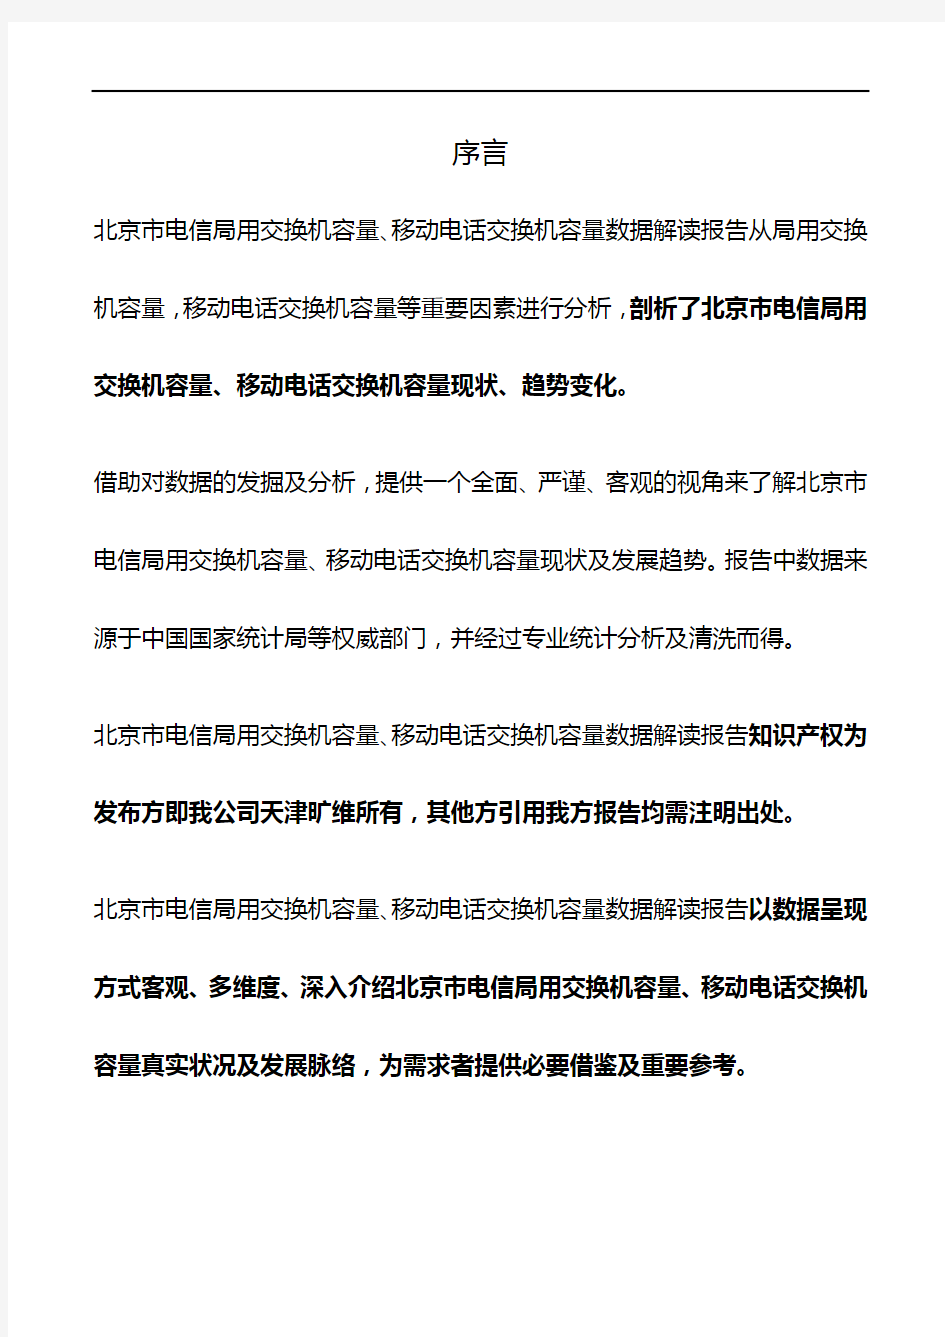 北京市电信局用交换机容量、移动电话交换机容量3年数据解读报告2019版